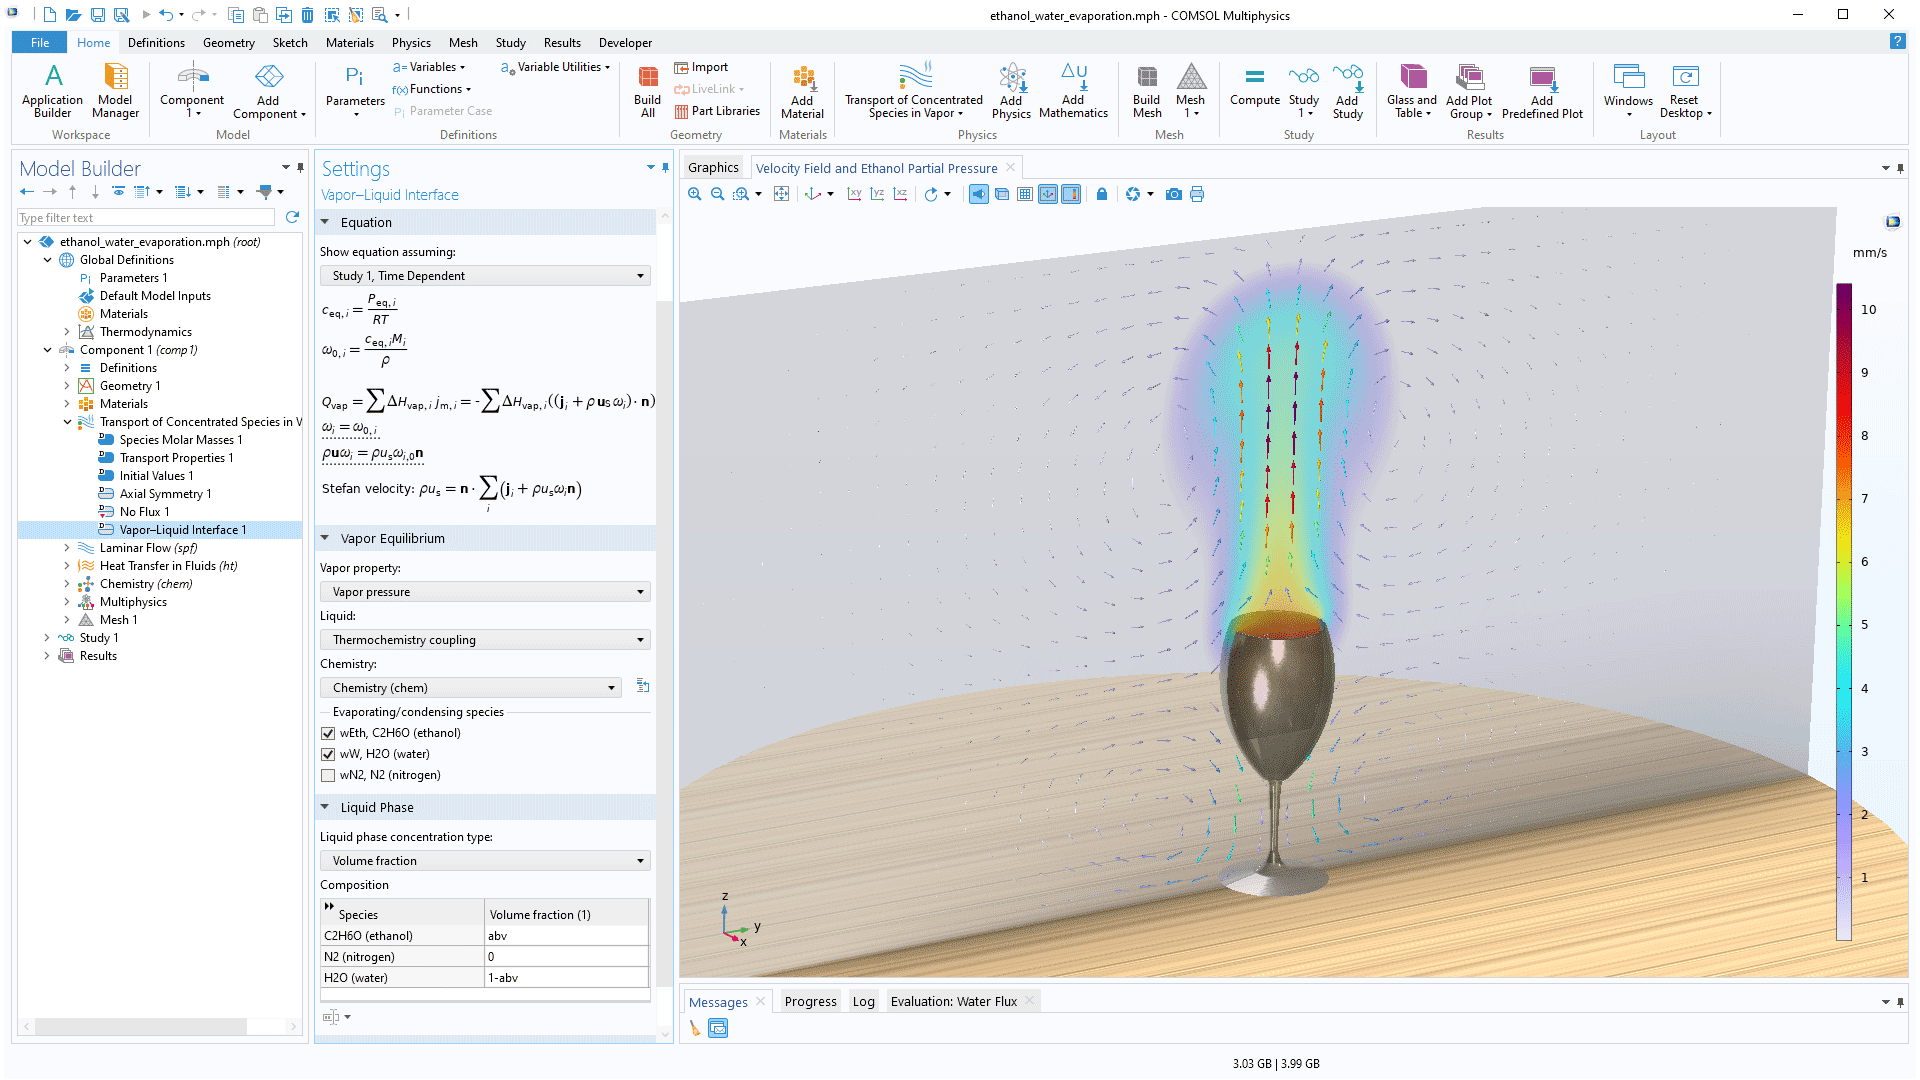 COMSOL Multiphysics 用户界面，显示了“模型开发器”，其中突出显示“汽-液界面”节点，并显示其对应的“设置”窗口；“图形”窗口中显示乙醇-水混合物模型。